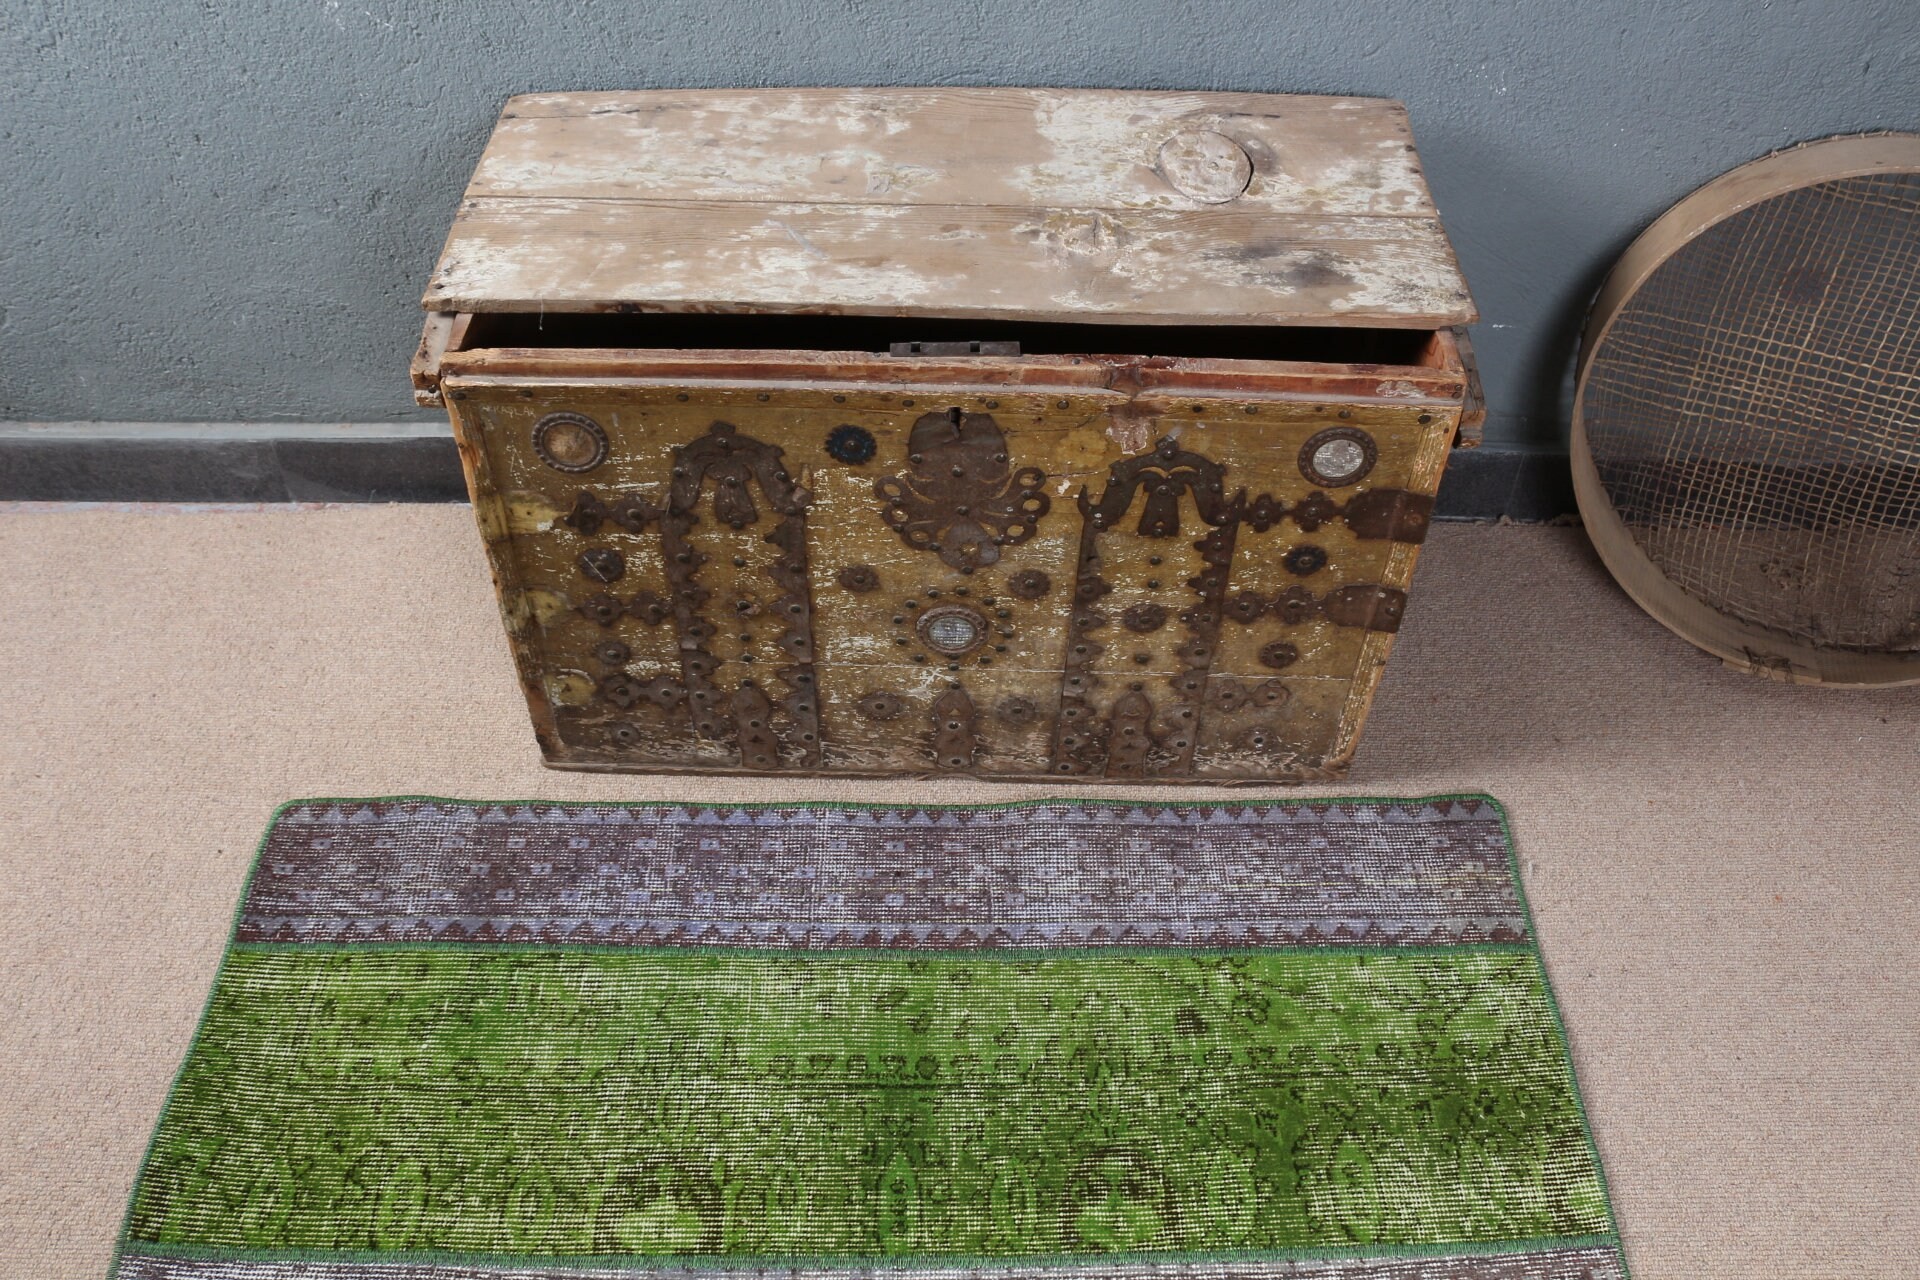 Moroccan Rug, Bathroom Rug, Rugs for Car Mat, Door Mat Rug, Green Cool Rug, Oriental Rug, Vintage Rug, 2x4 ft Small Rug, Turkish Rug